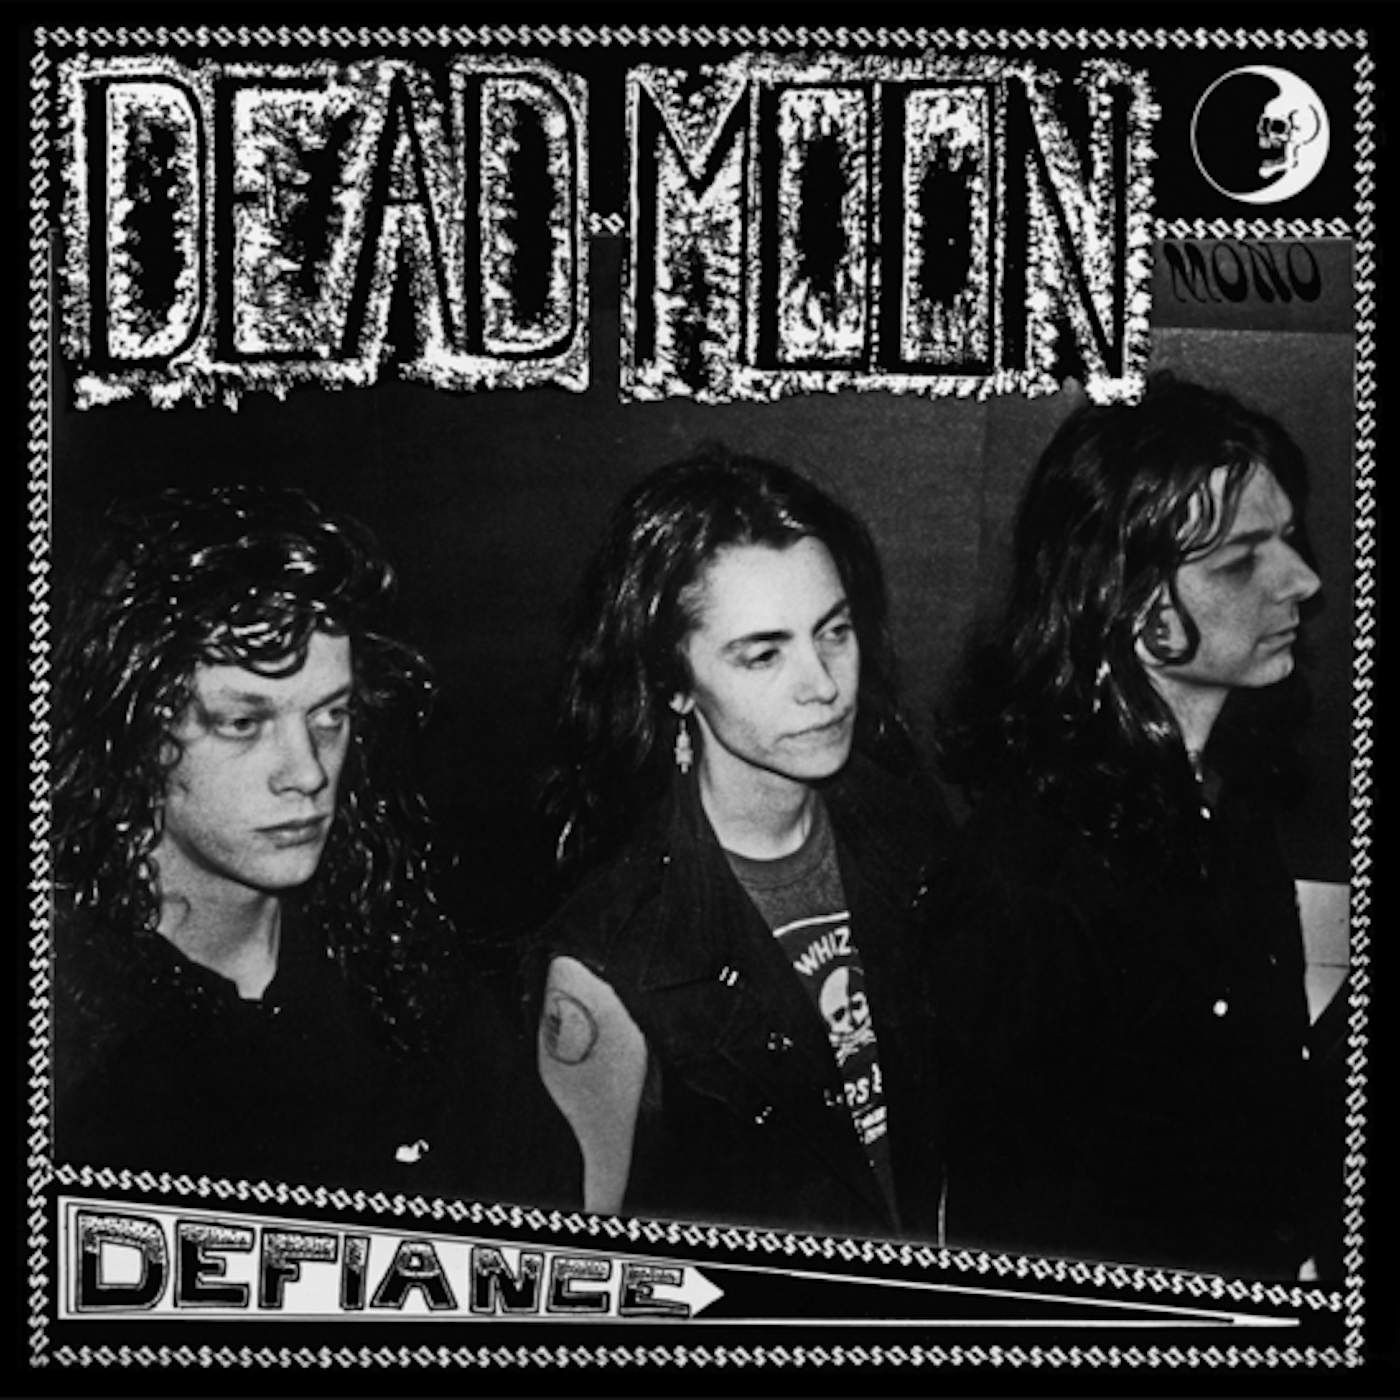 Dead Moon Defiance Vinyl Record